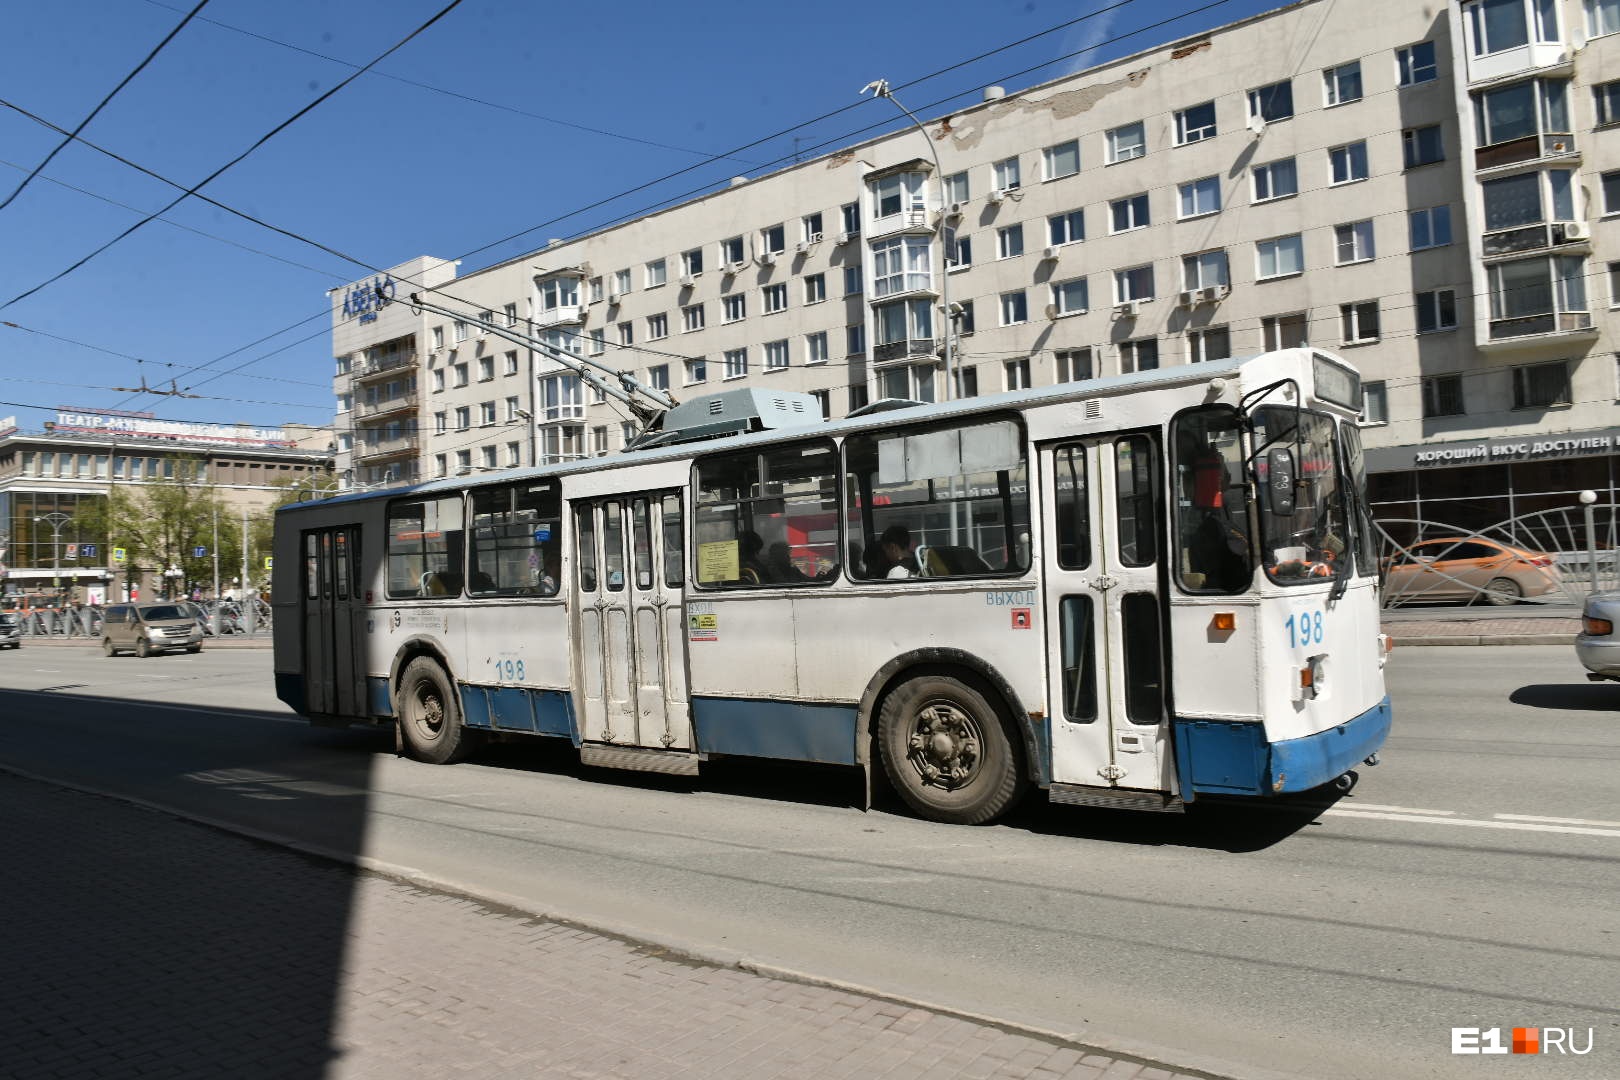 Вымрут как динозавры? Что будет с троллейбусами Екатеринбурга после отказа в обновлении парка